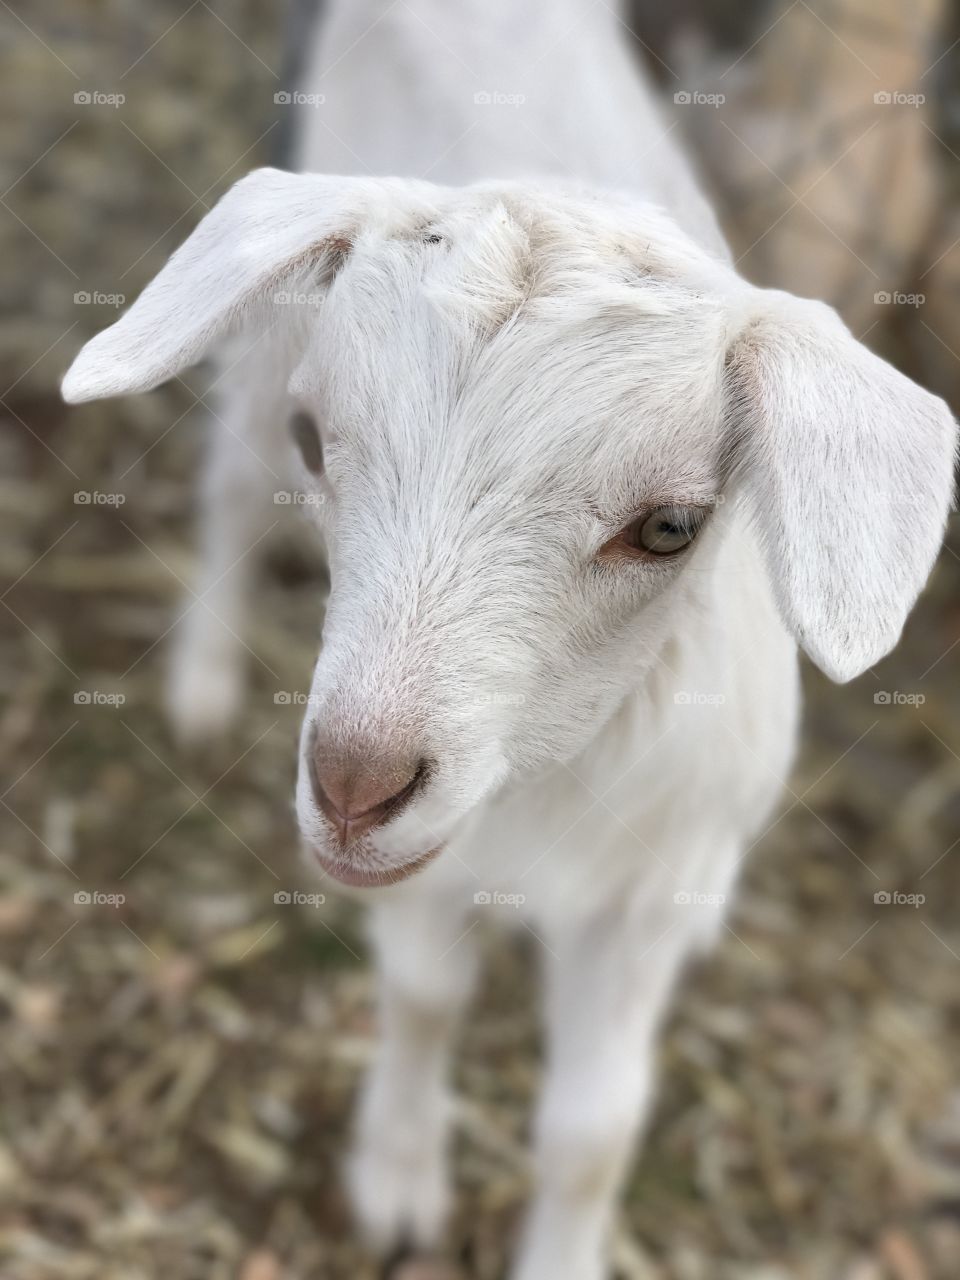 Baby Saanan goat. 